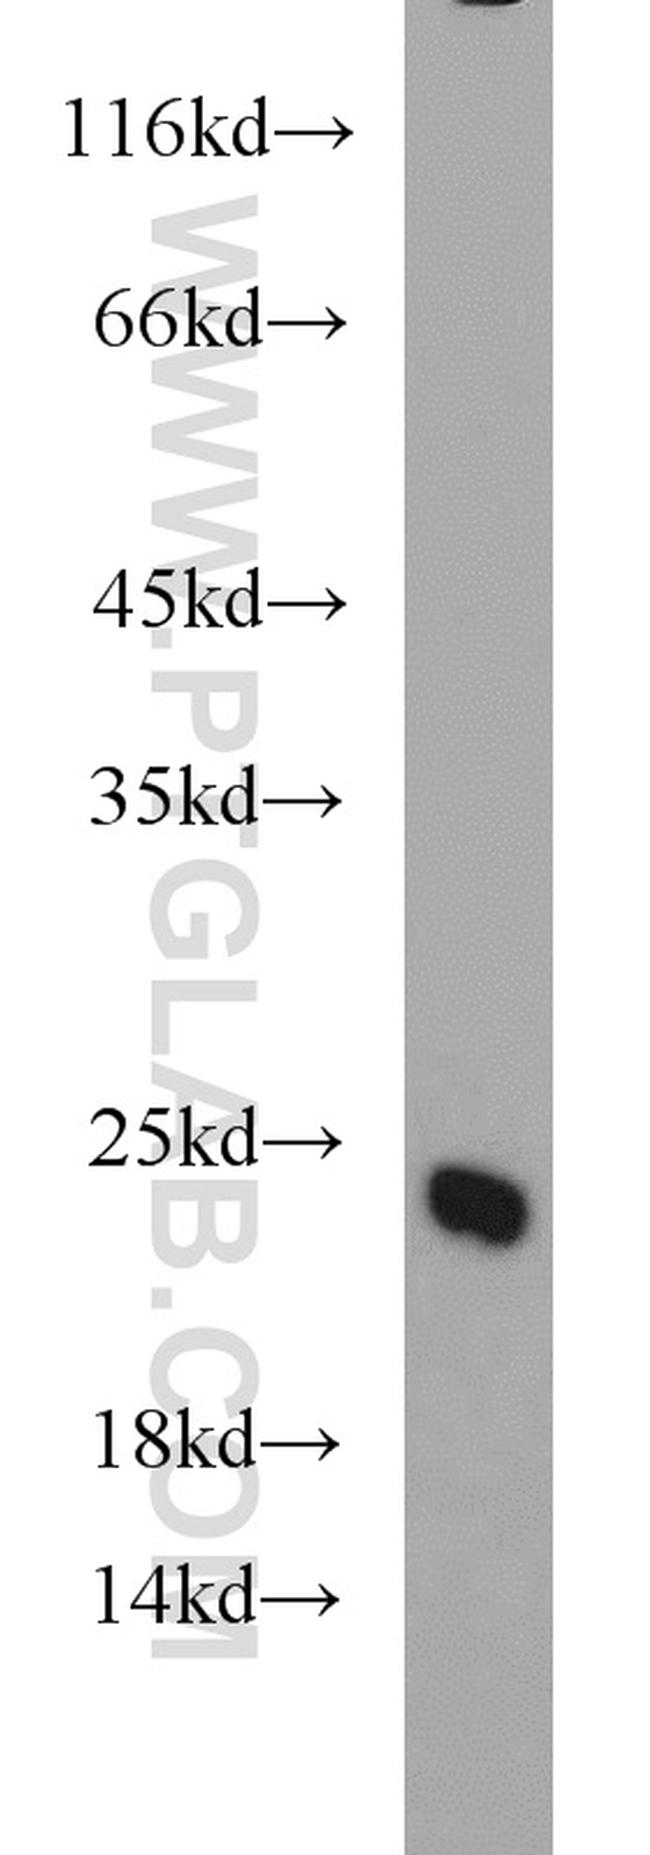 TAGLN3 Antibody in Western Blot (WB)